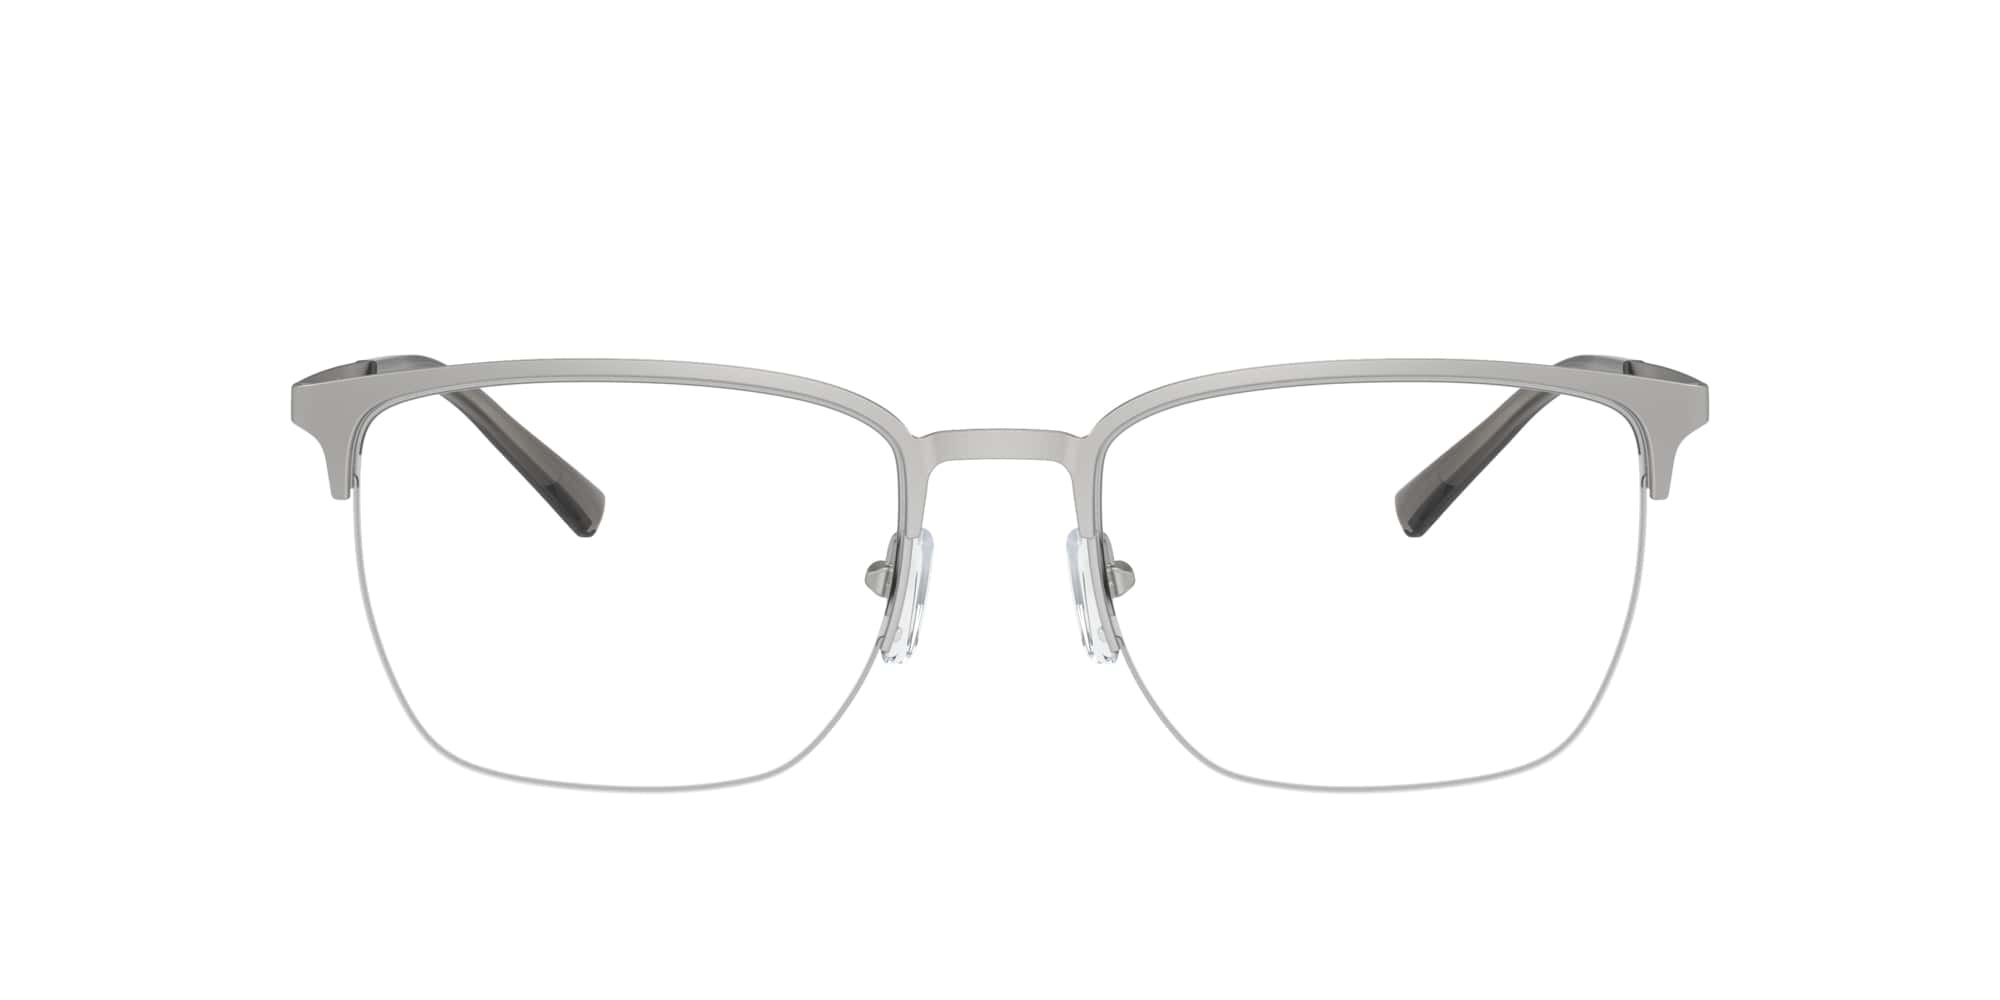 Das Bild zeigt die Korrektionsbrille EA1151 3045 von der Marke Emporio Armani in Silber.